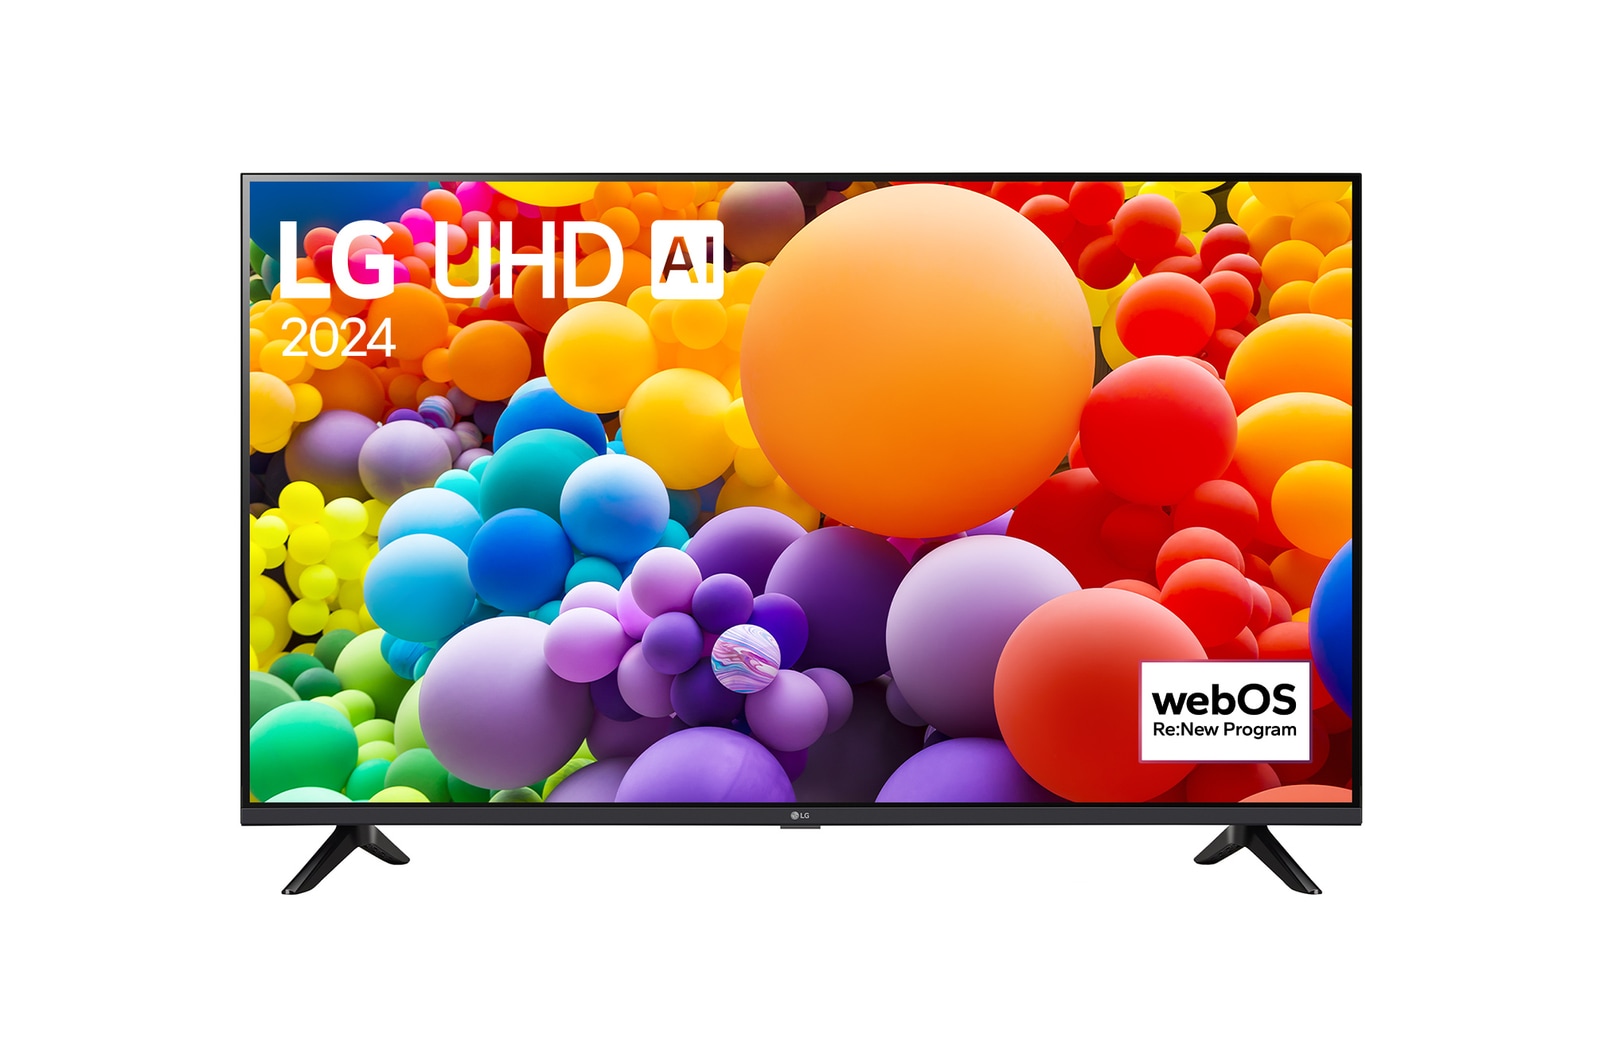 LG 65" LG UHD AI UT73 4K Smart TV 2024, 65UT73006LA